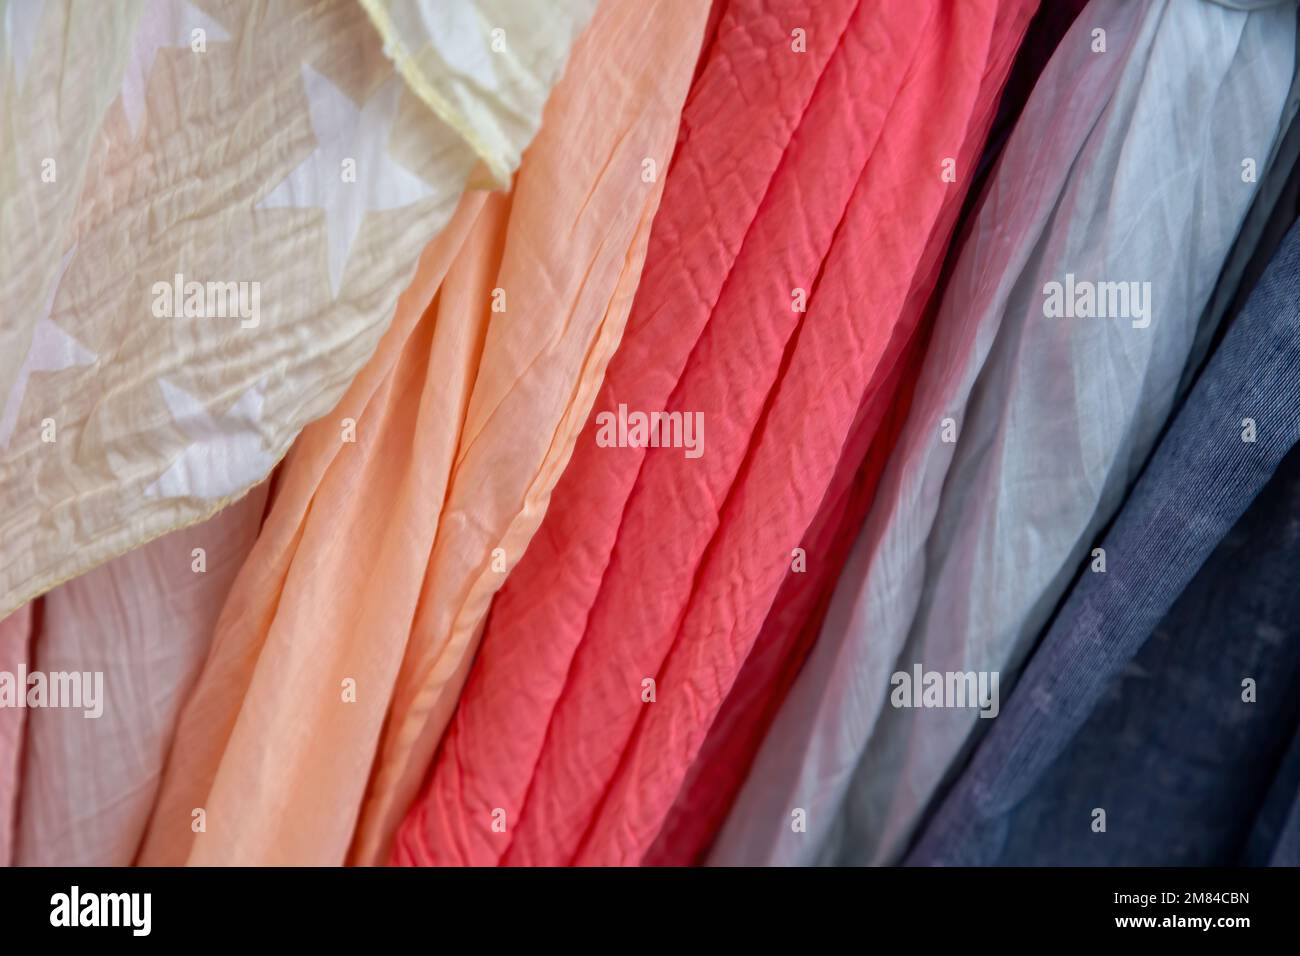 Molti accessori di abbigliamento colorati appesi all'esterno Foto Stock